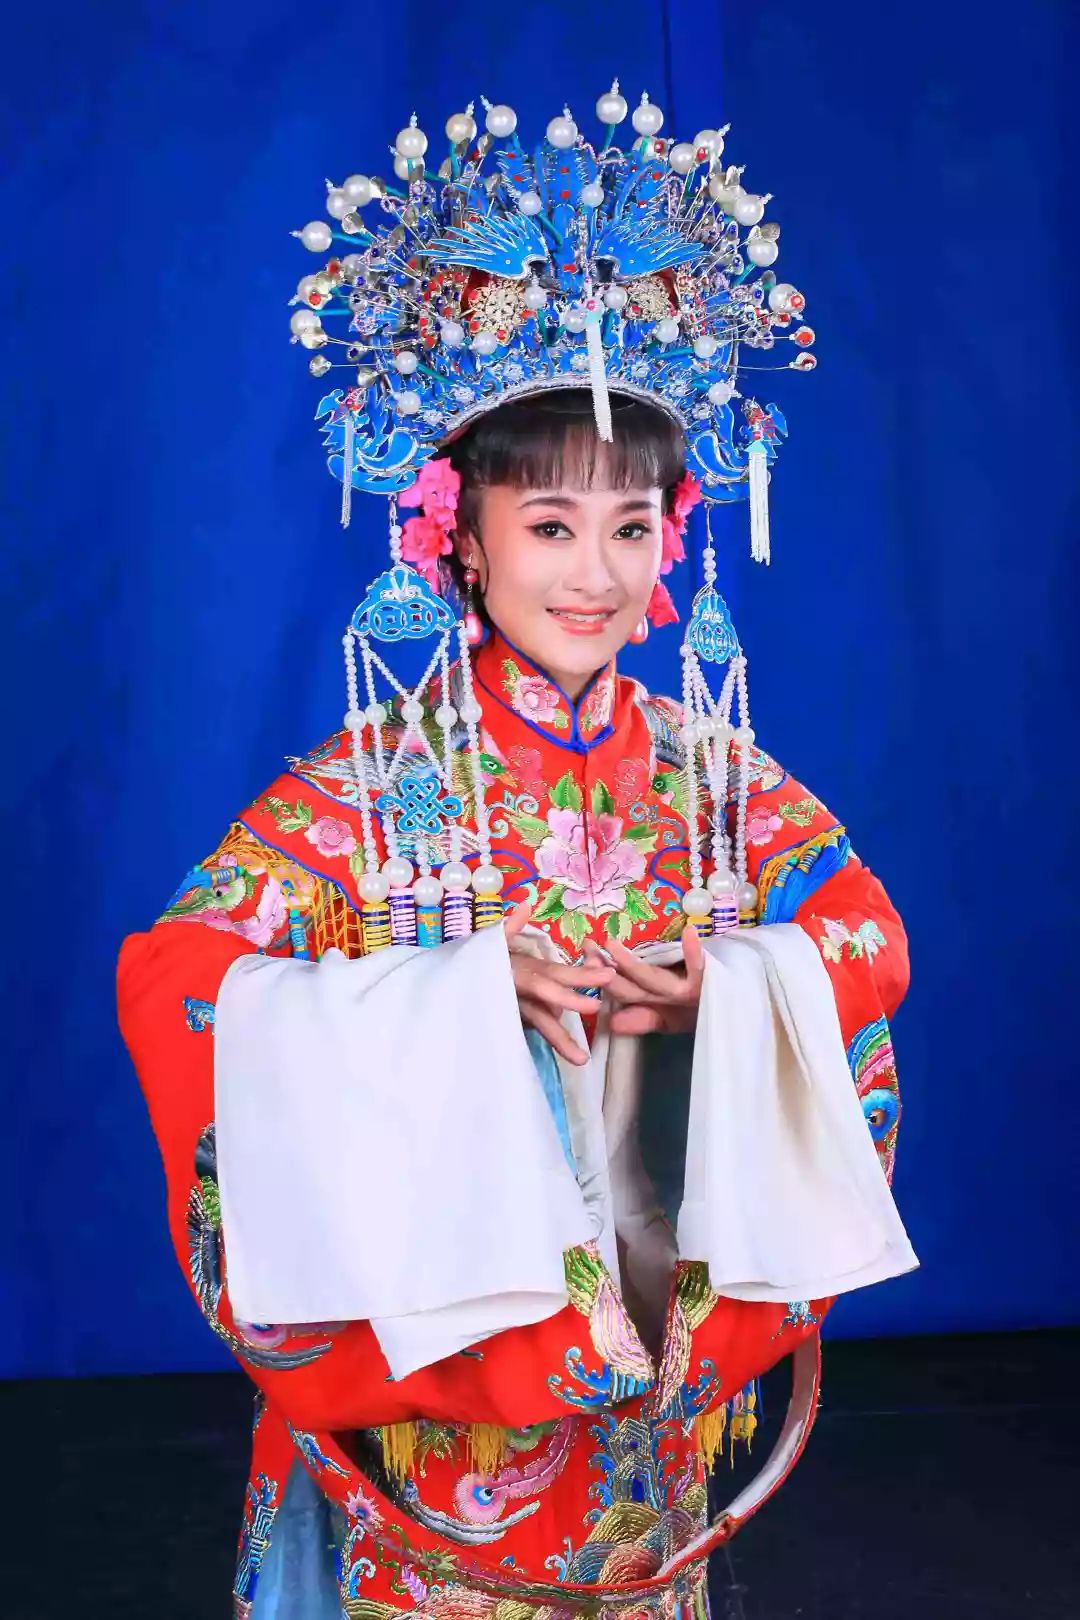 【邀请函】经典黄梅戏《女驸马》与您相约滁州学院音乐厅!